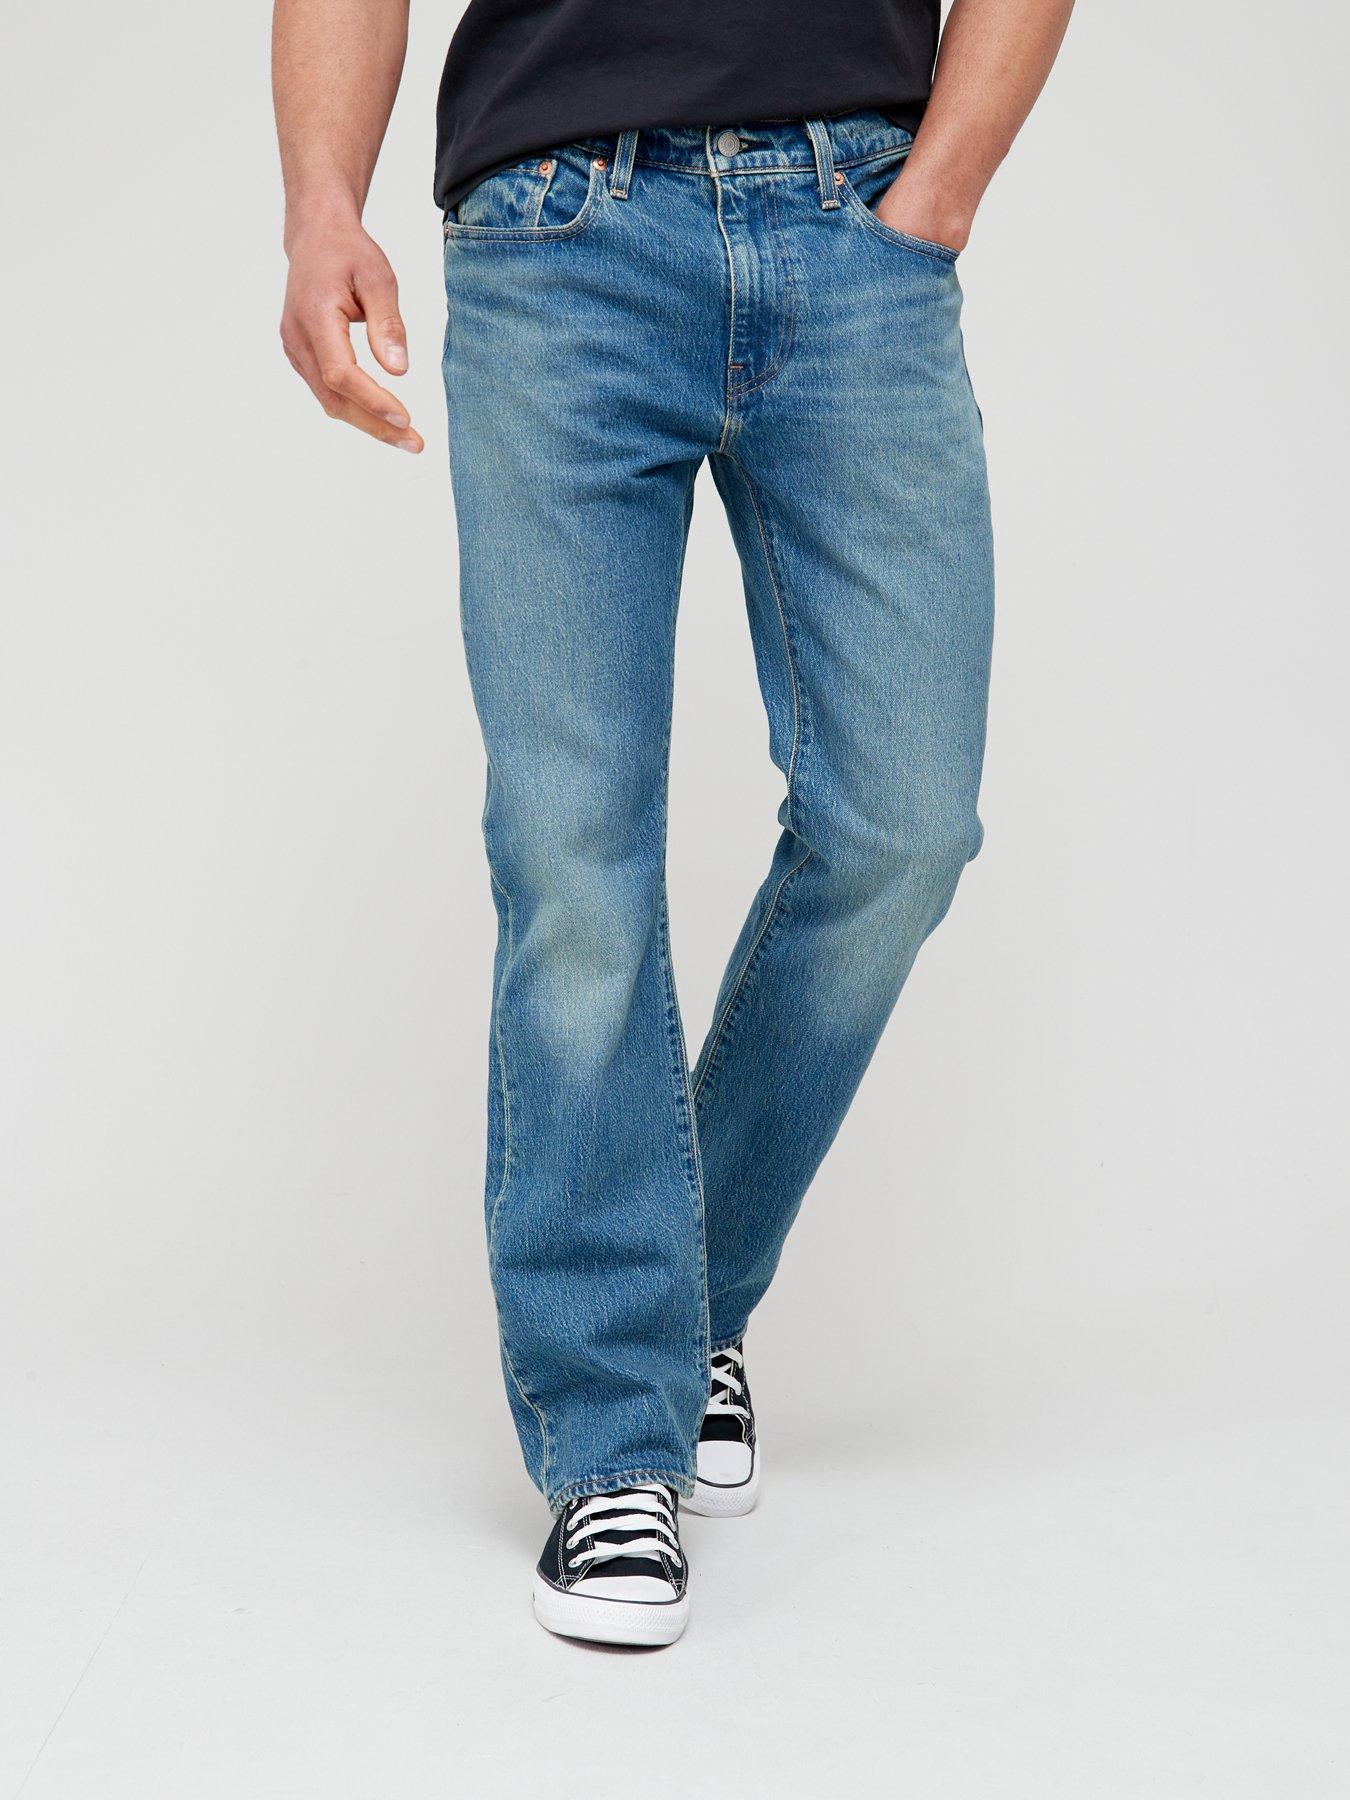 Levi's 527™ Slim Fit Boot Cut Jeans - Light Wash 